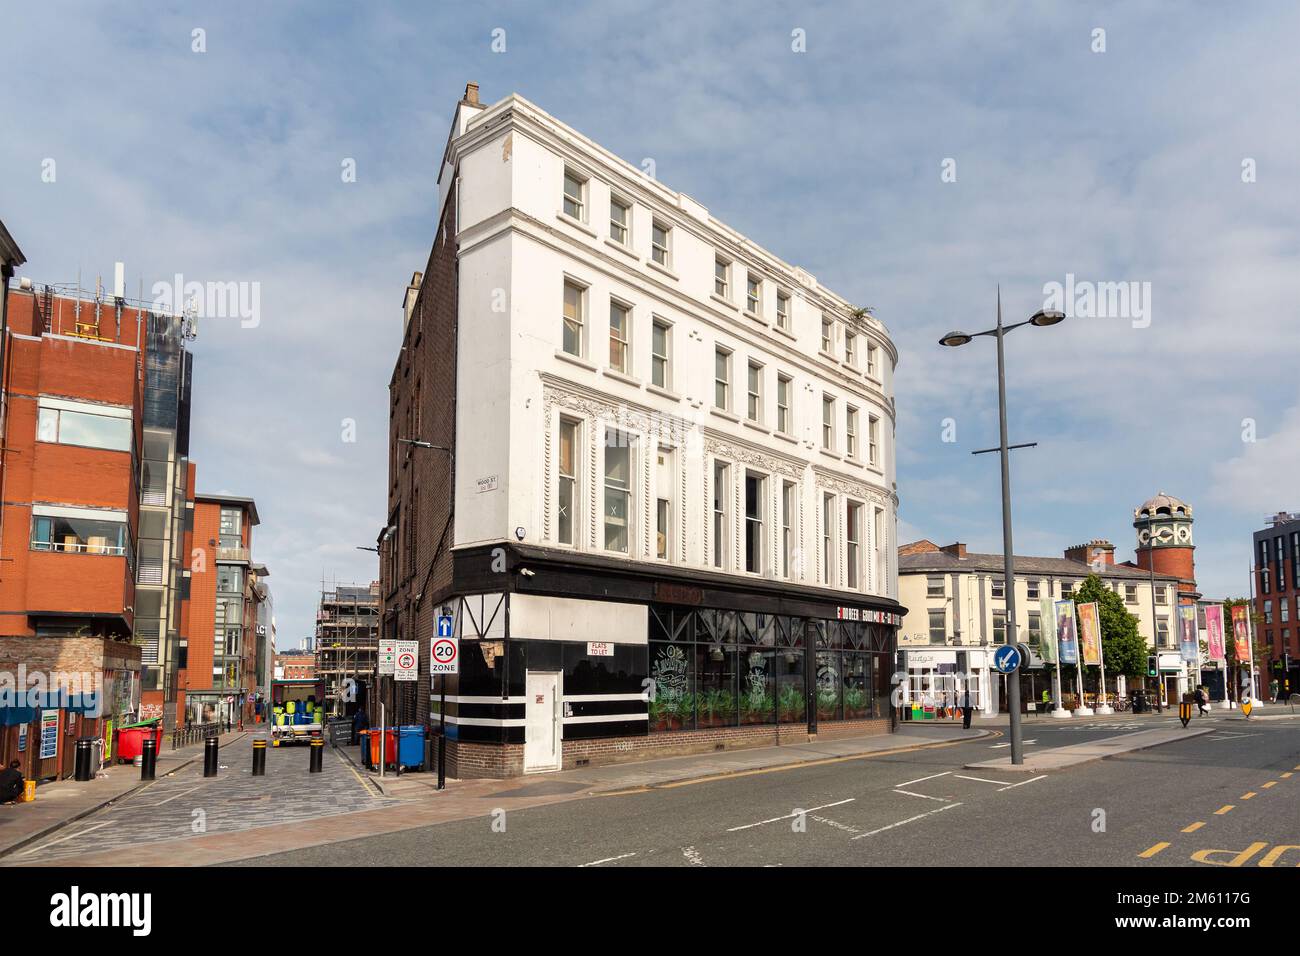 Liverpool, Großbritannien: Jimmy's Livemusik-Veranstaltungsort, Havelock Building, 130 Bold Street. Ehemaliger Cabin Club, der 2015 geschlossen wurde. Stockfoto